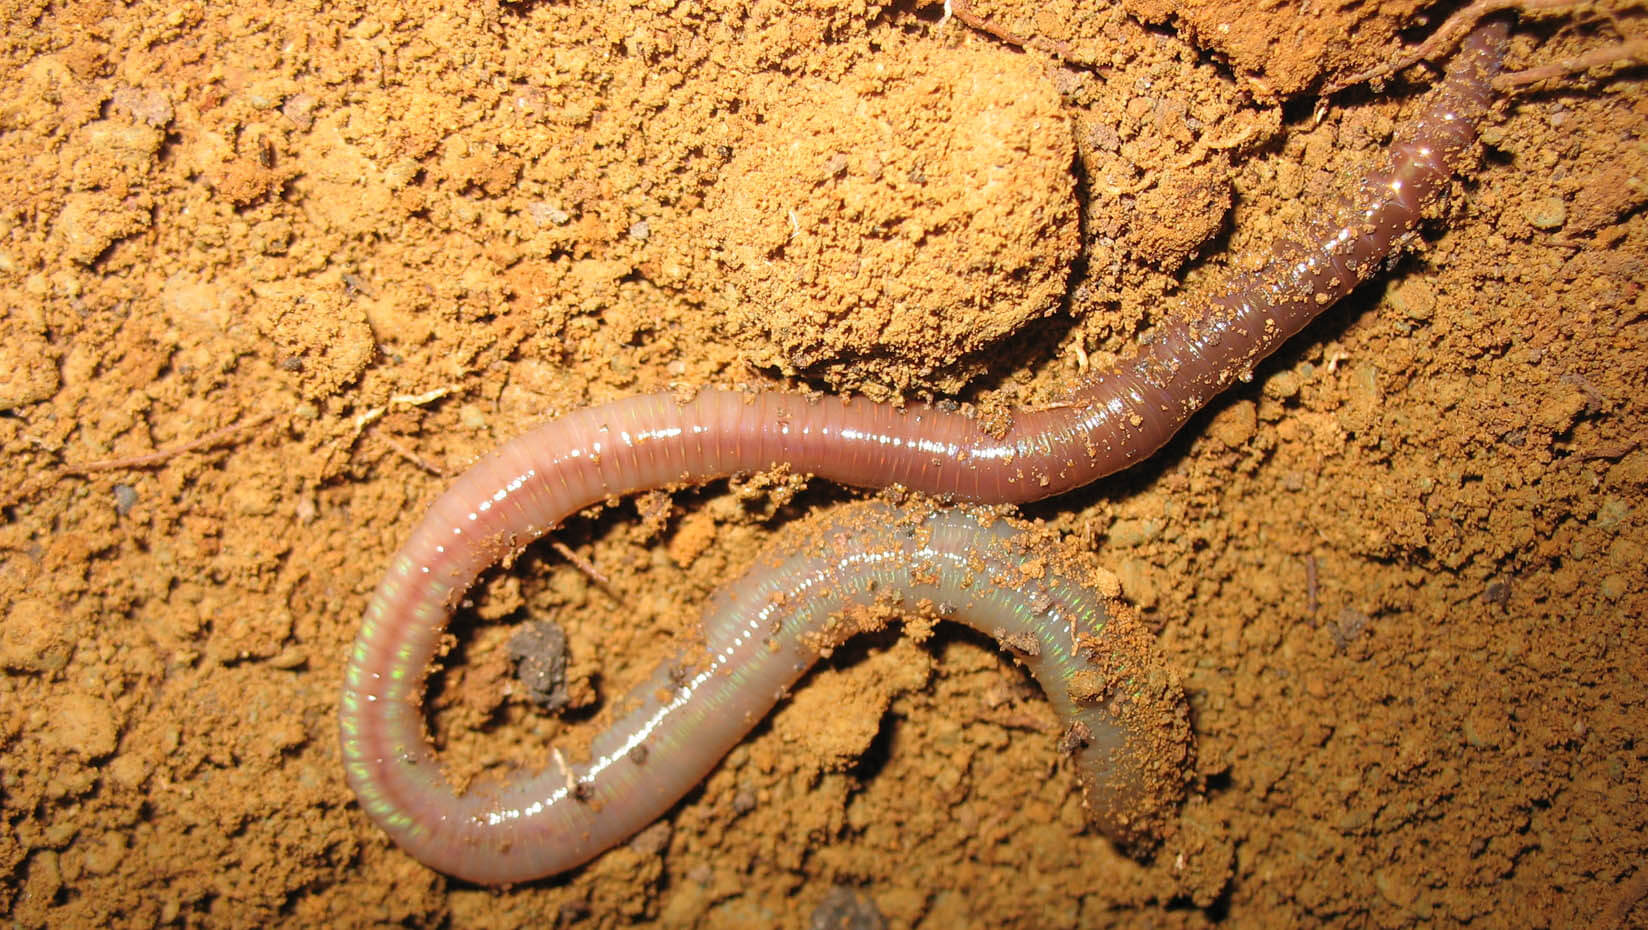 https://umaine.edu/news/wp-content/uploads/sites/3/2021/06/Earthworm-news-feature.jpg